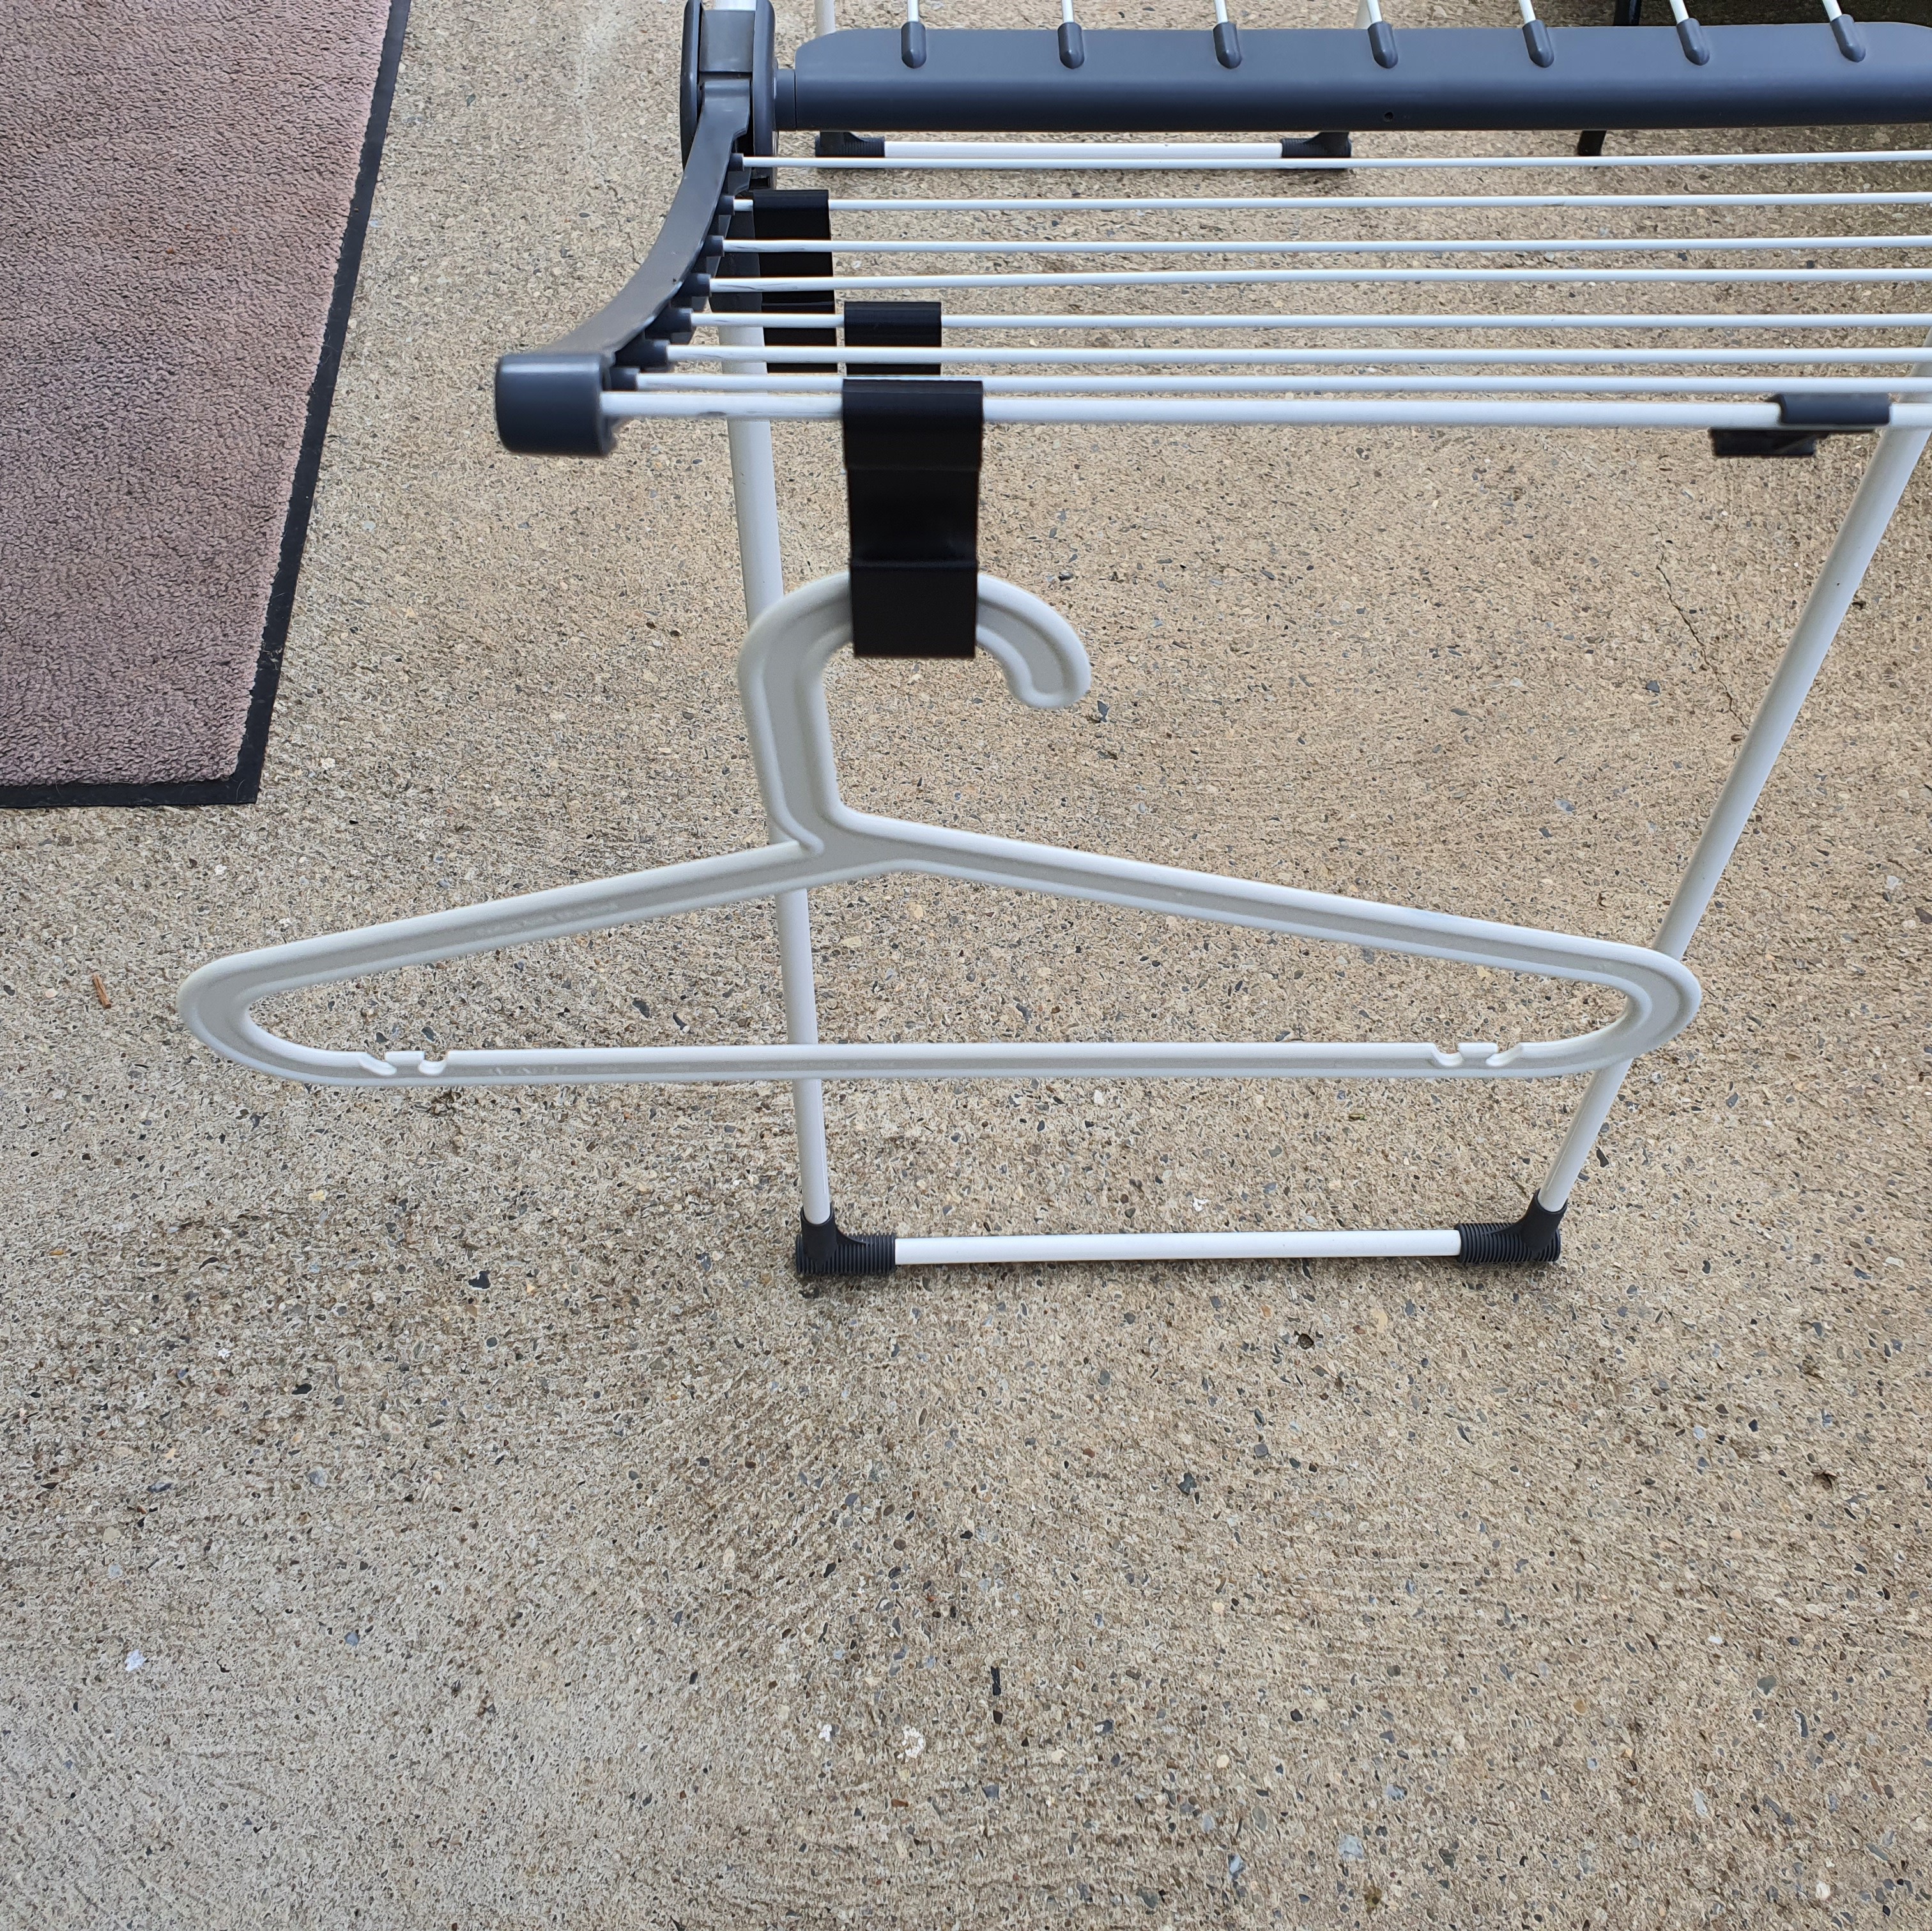 Ikea coat hanger holder for laundry rack